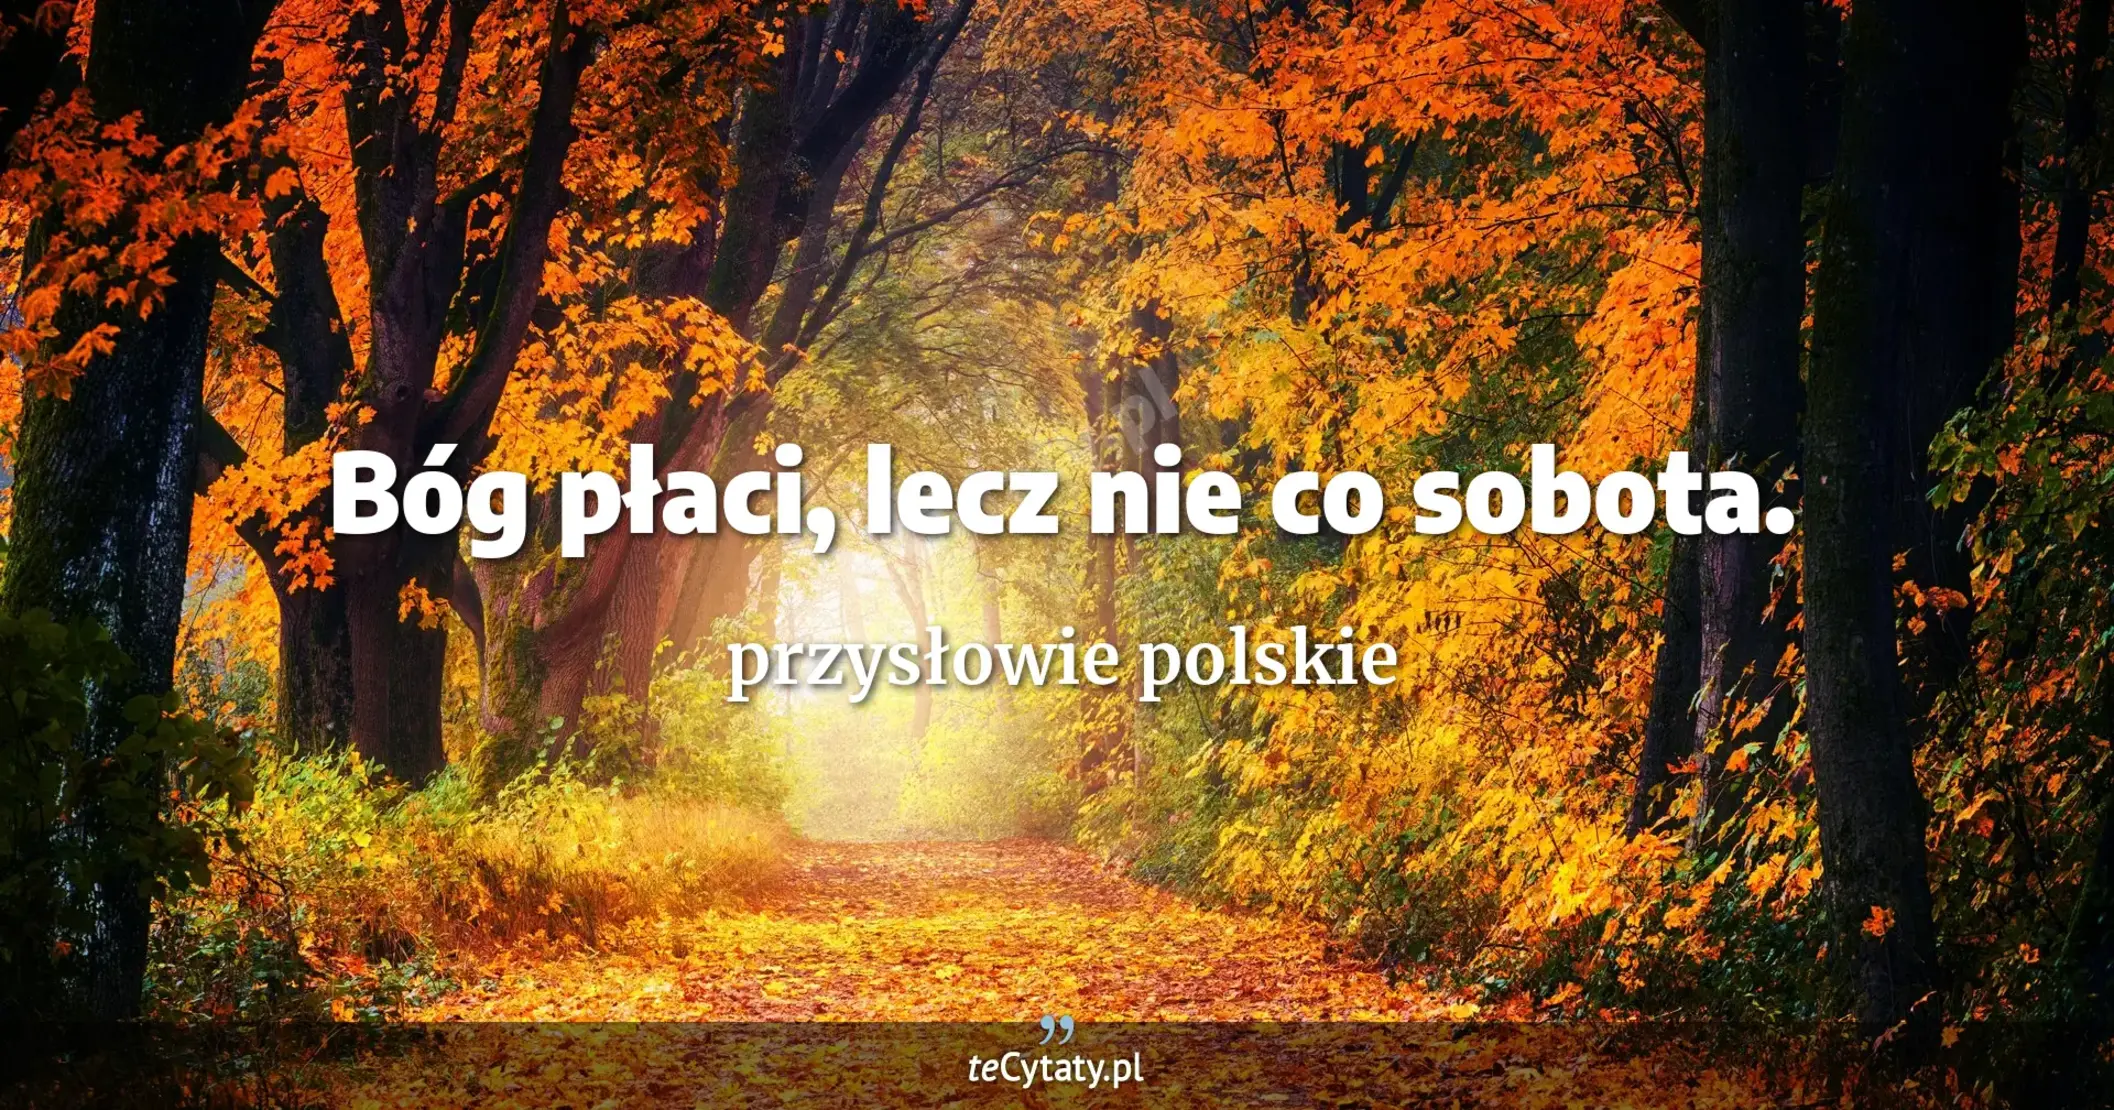 Bóg płaci, lecz nie co sobota. - przysłowie polskie